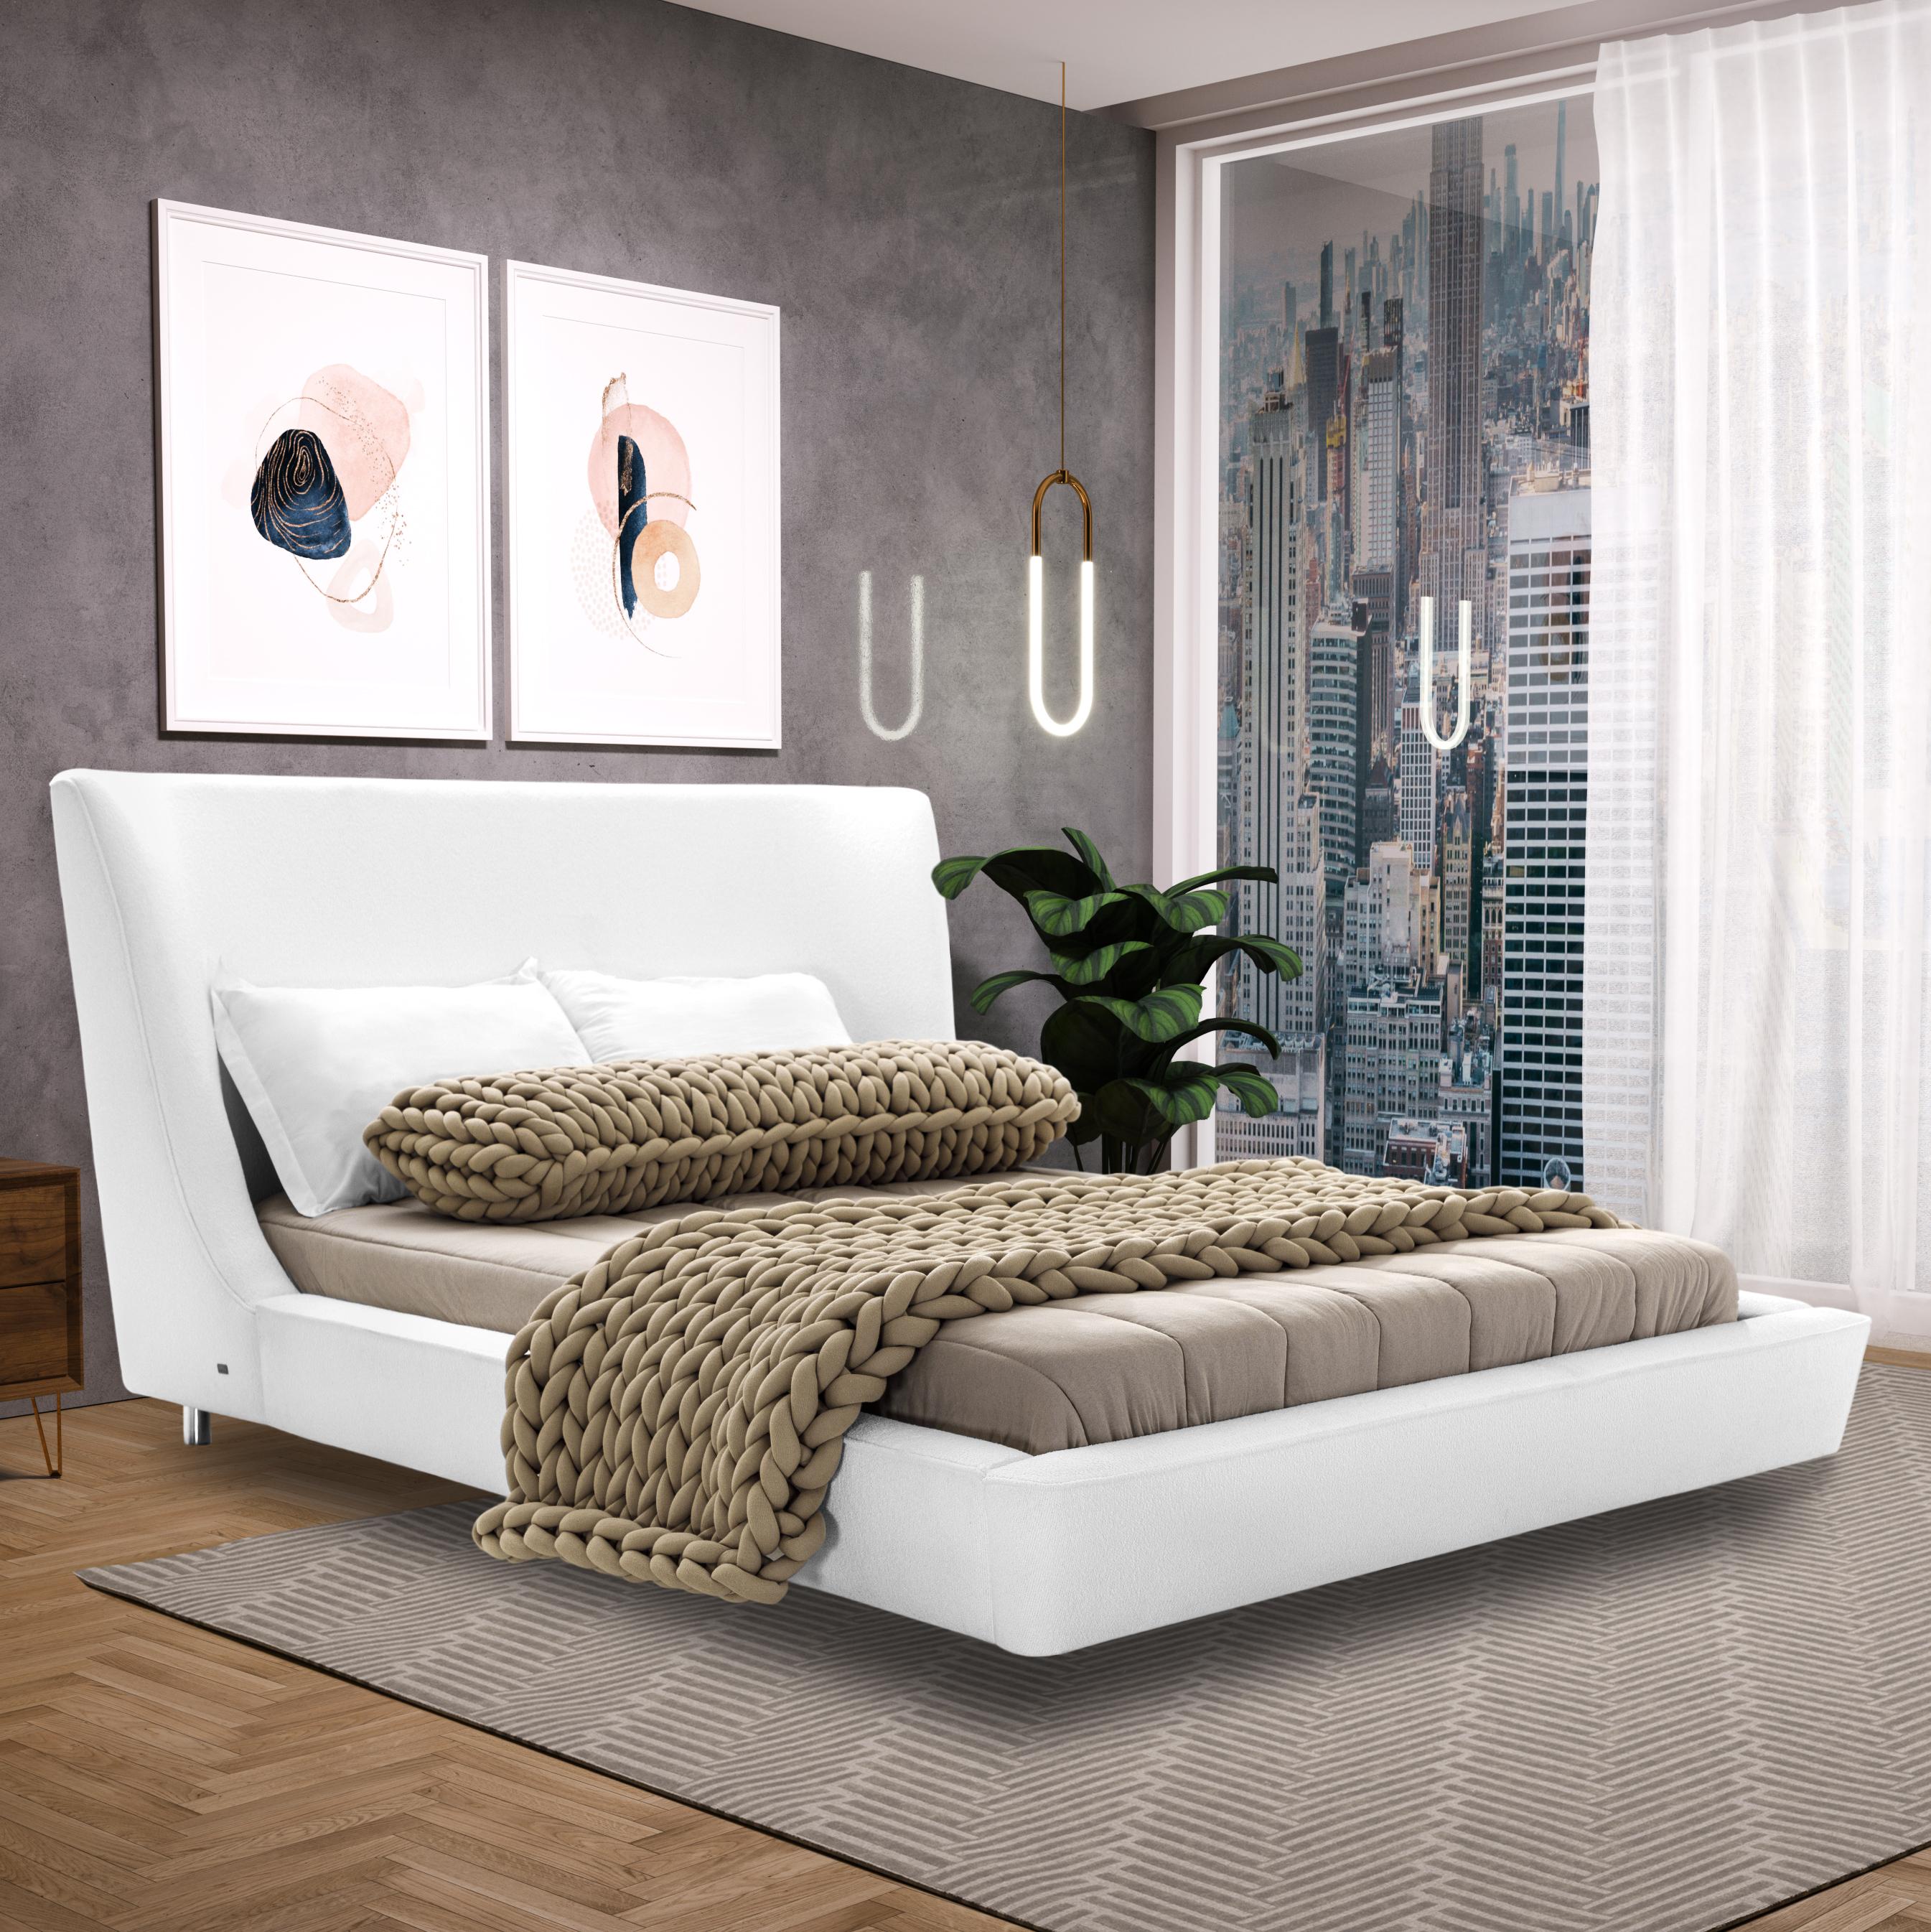 Die fantastischen Designer des Uultis-Teams haben dieses schöne Musa-Queen-Bett aus weißem Stoff mit einem muschelförmigen Kopfteil gefertigt, das von einem eckigen Rahmen getragen wird, der mit Schaumstoff und Stoff bezogen ist. Ein raffiniertes